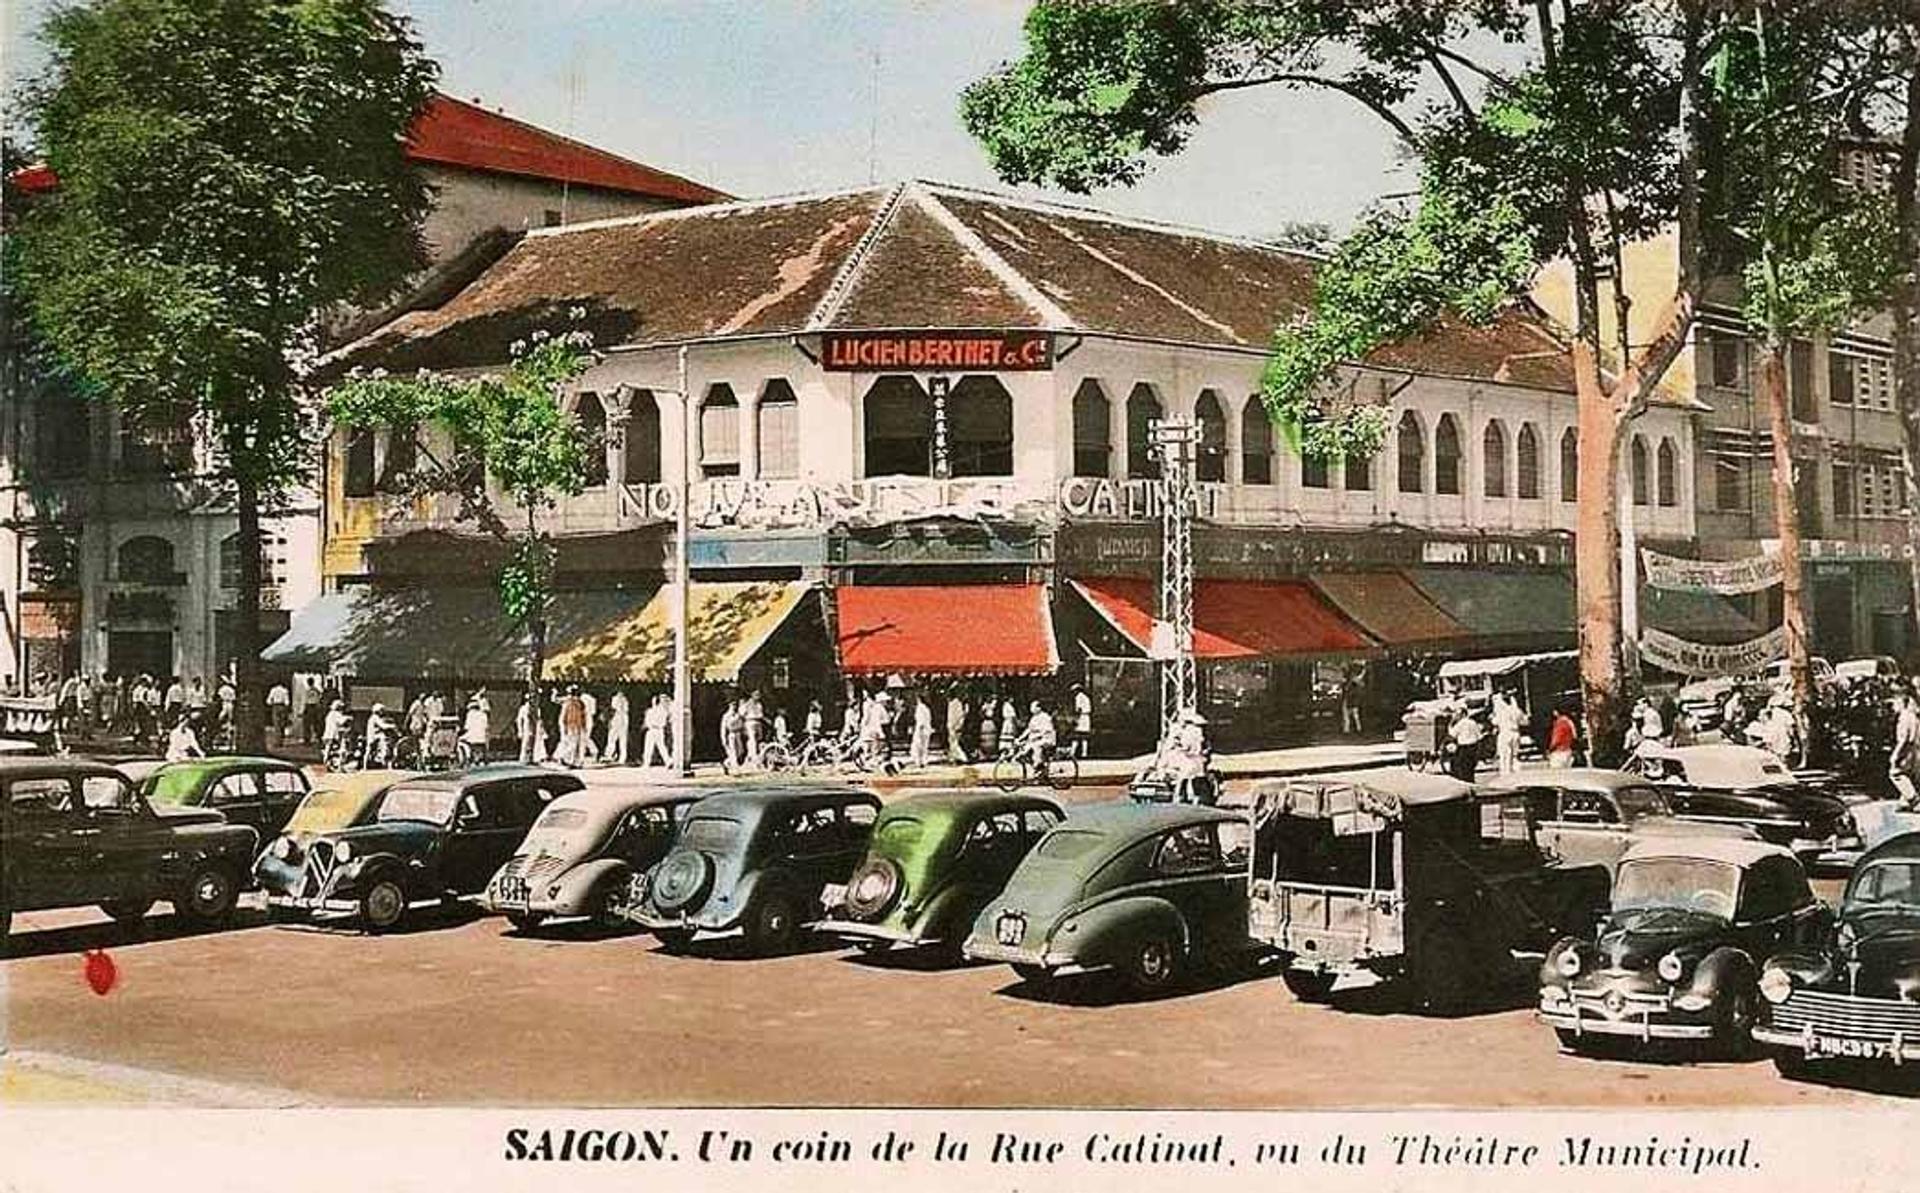 sai-gon-thoi-1940-1954.jpg